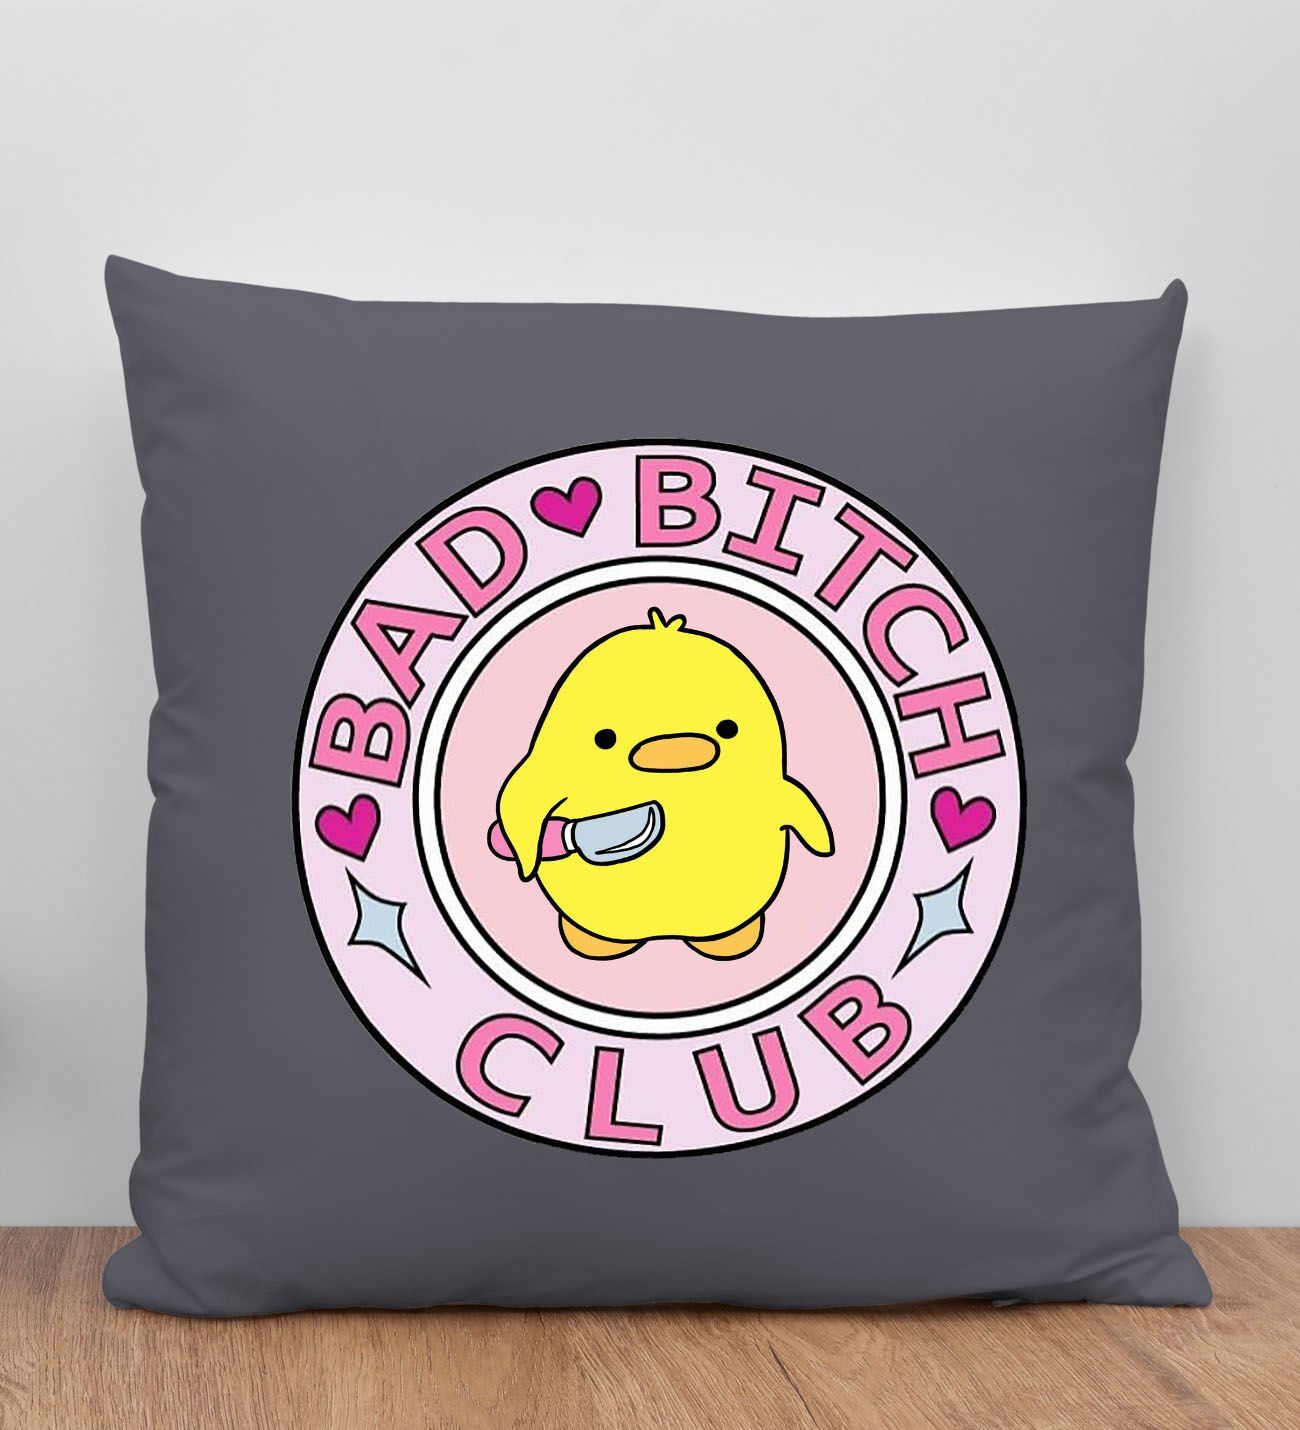 BK Gift Bad Bitch Club Tasarımlı Antrasit Kırlent Yastık, Arkadaşa Hediye, Ev Dekorasyonu, Ev Hediyesi-1